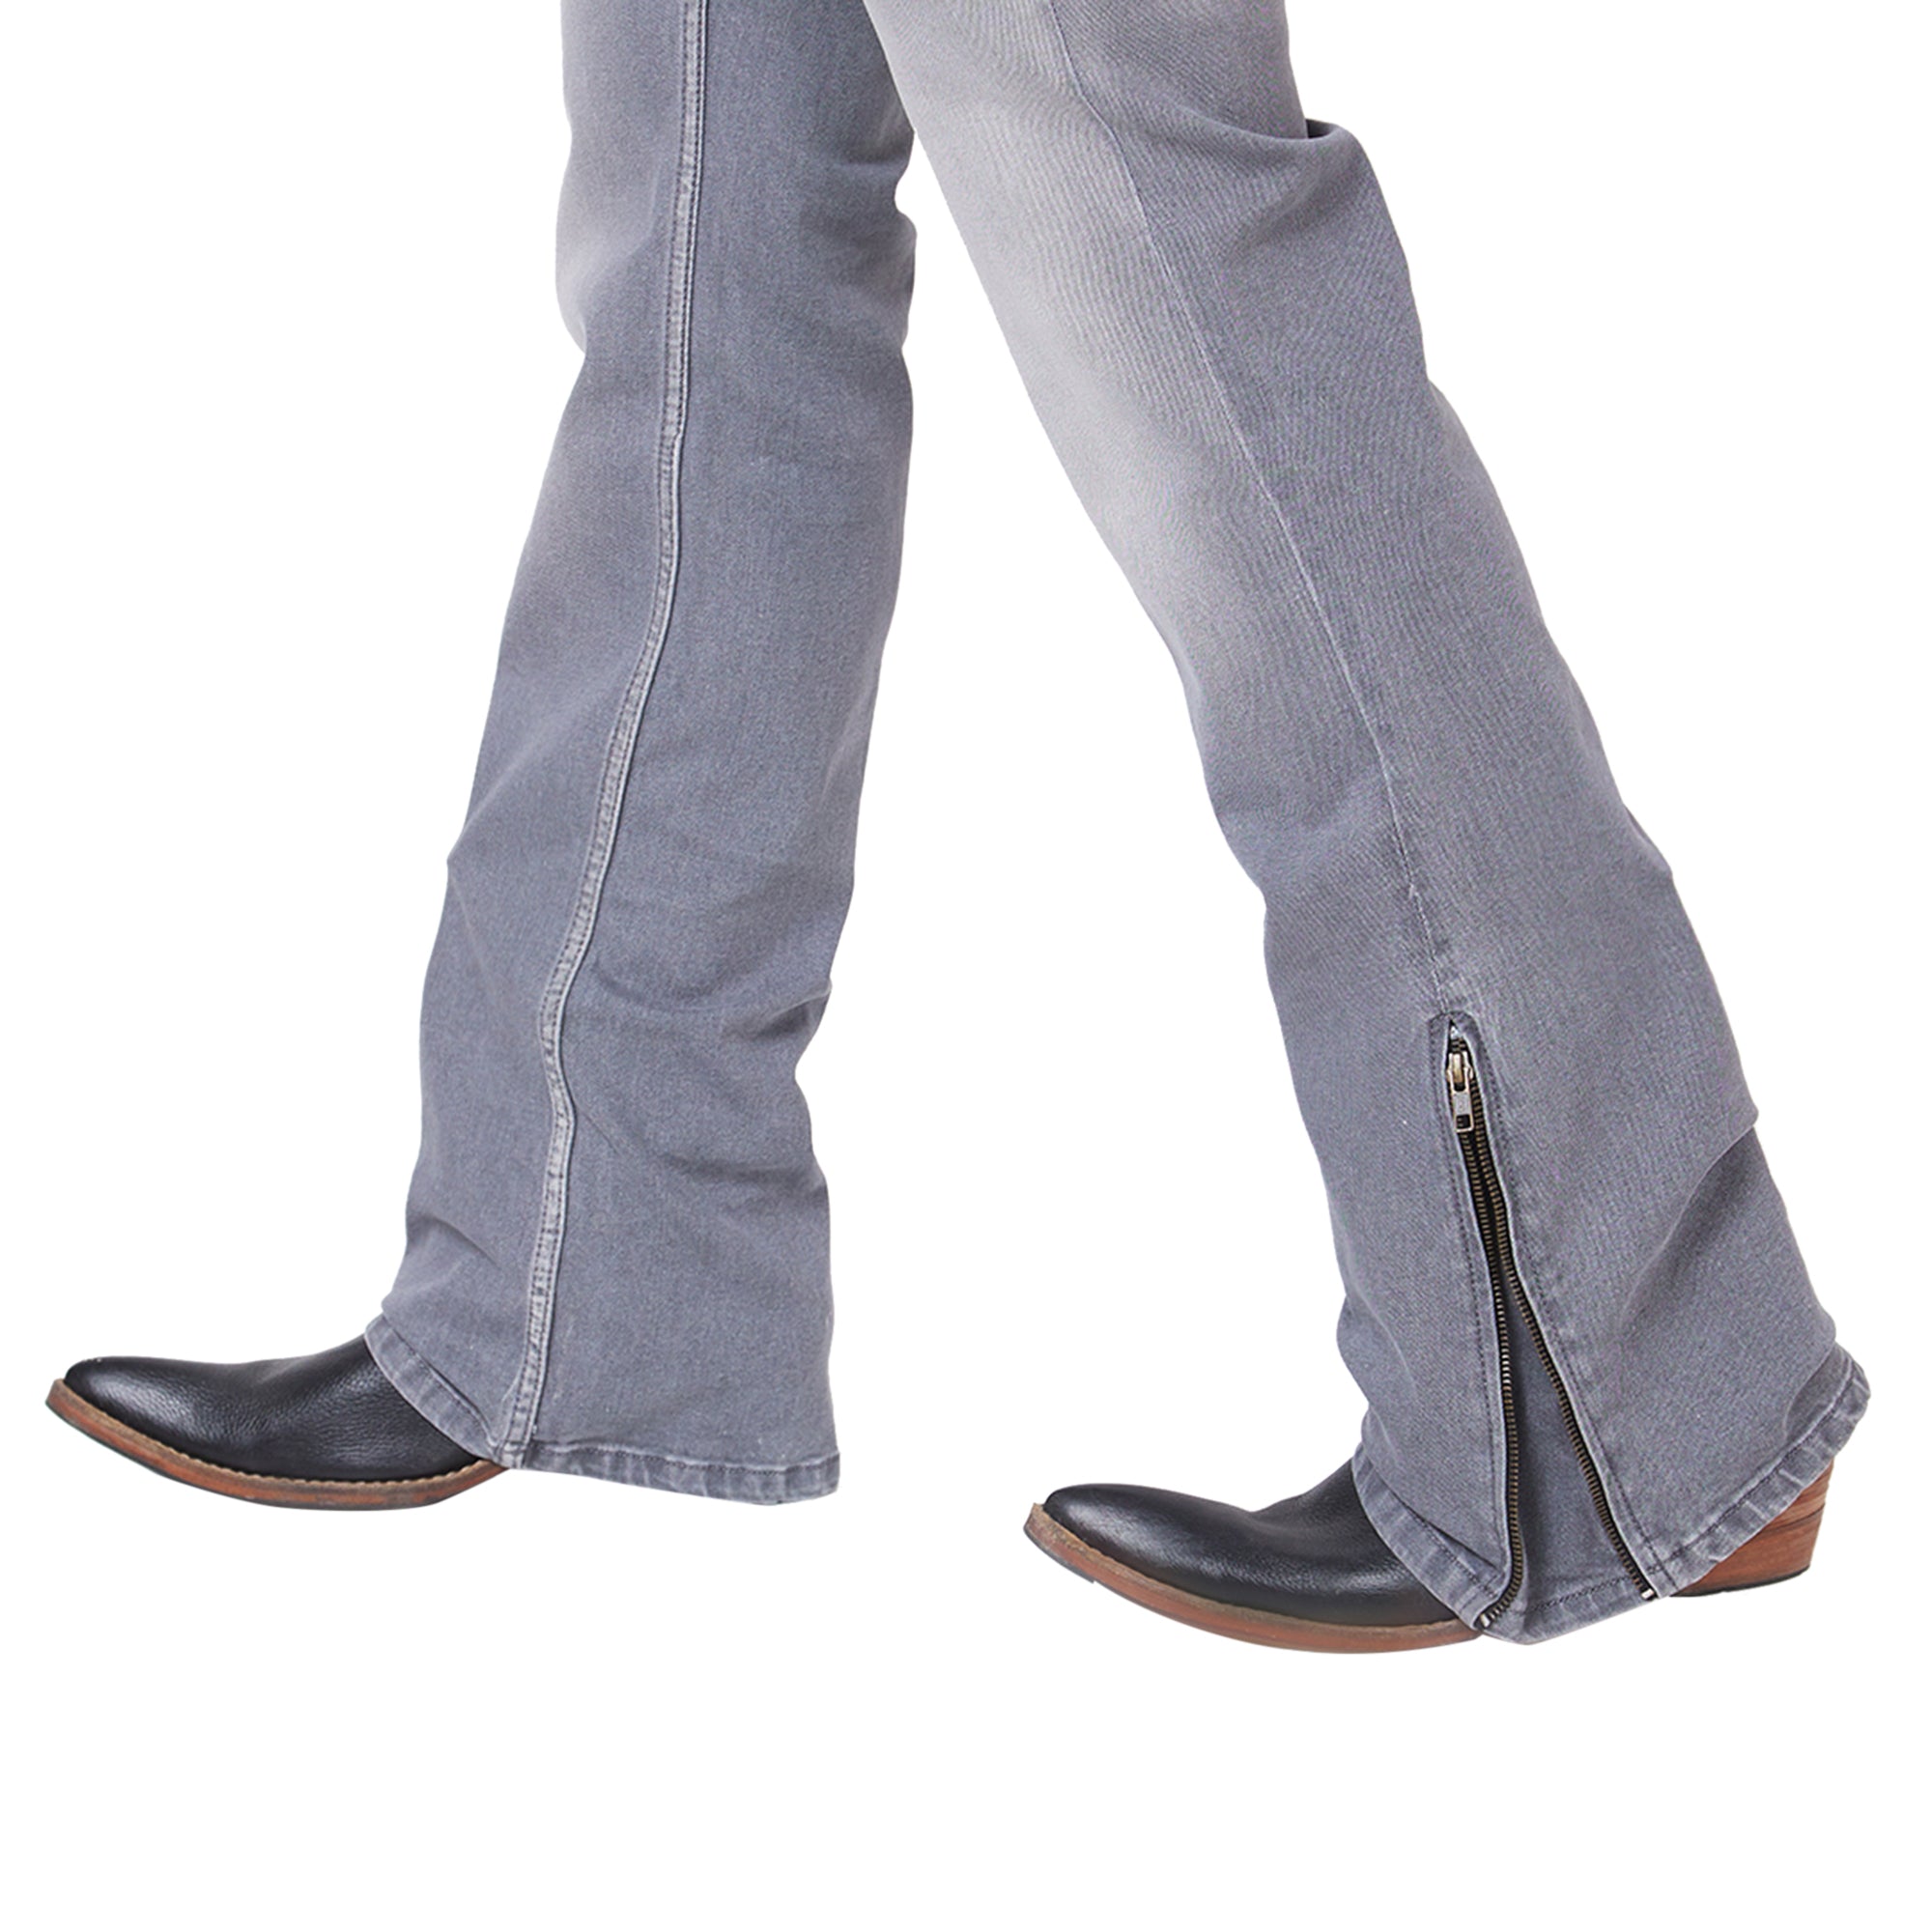 Men's Casual Slim Fit Low Rise Denim Bootcut Jeans